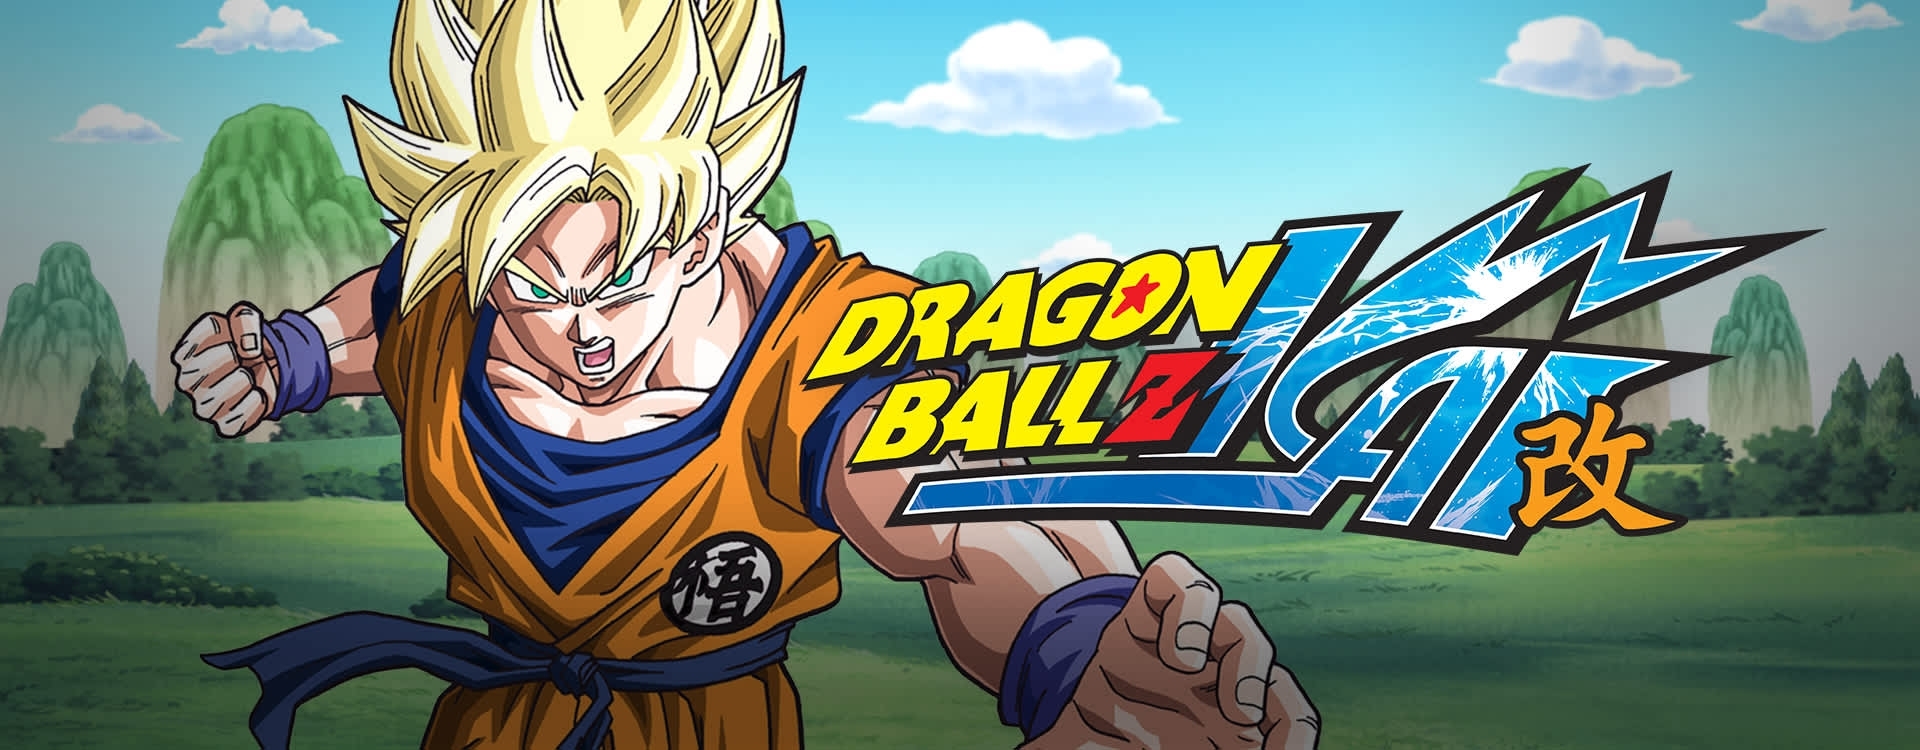 download dragon ball kai full episode sub indo